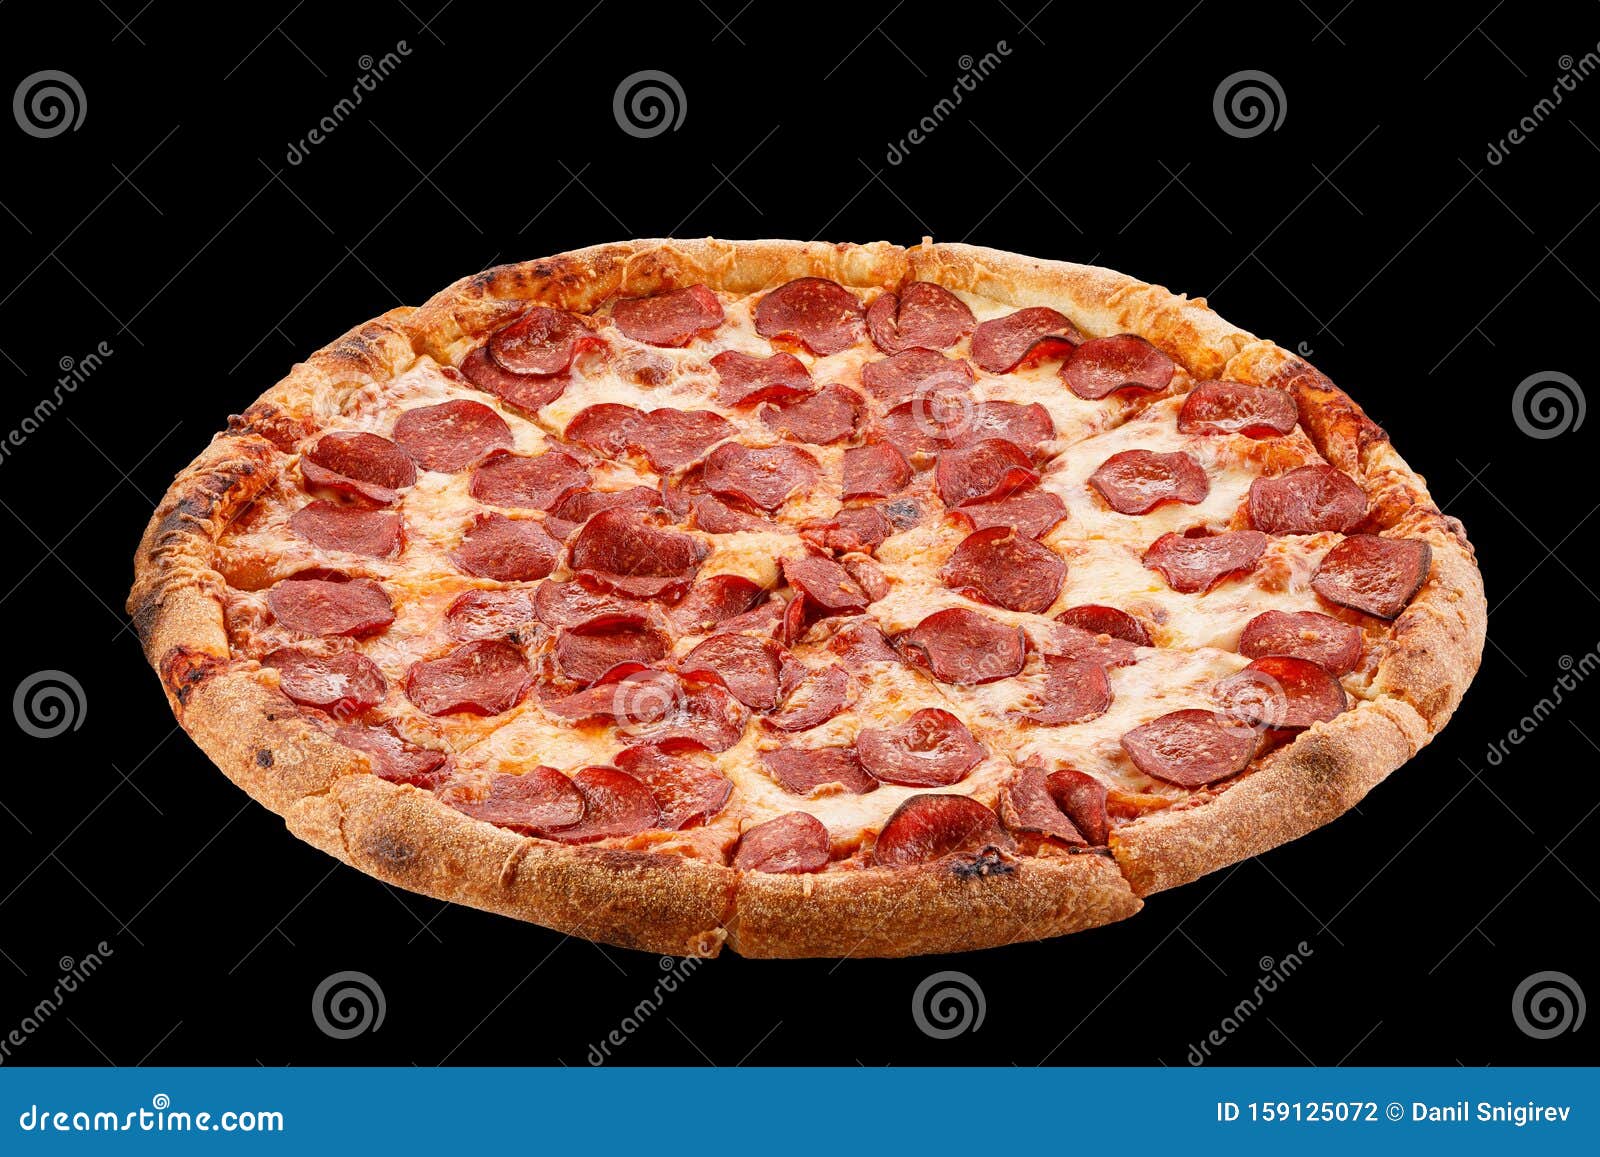 фон пицца пепперони фото 118